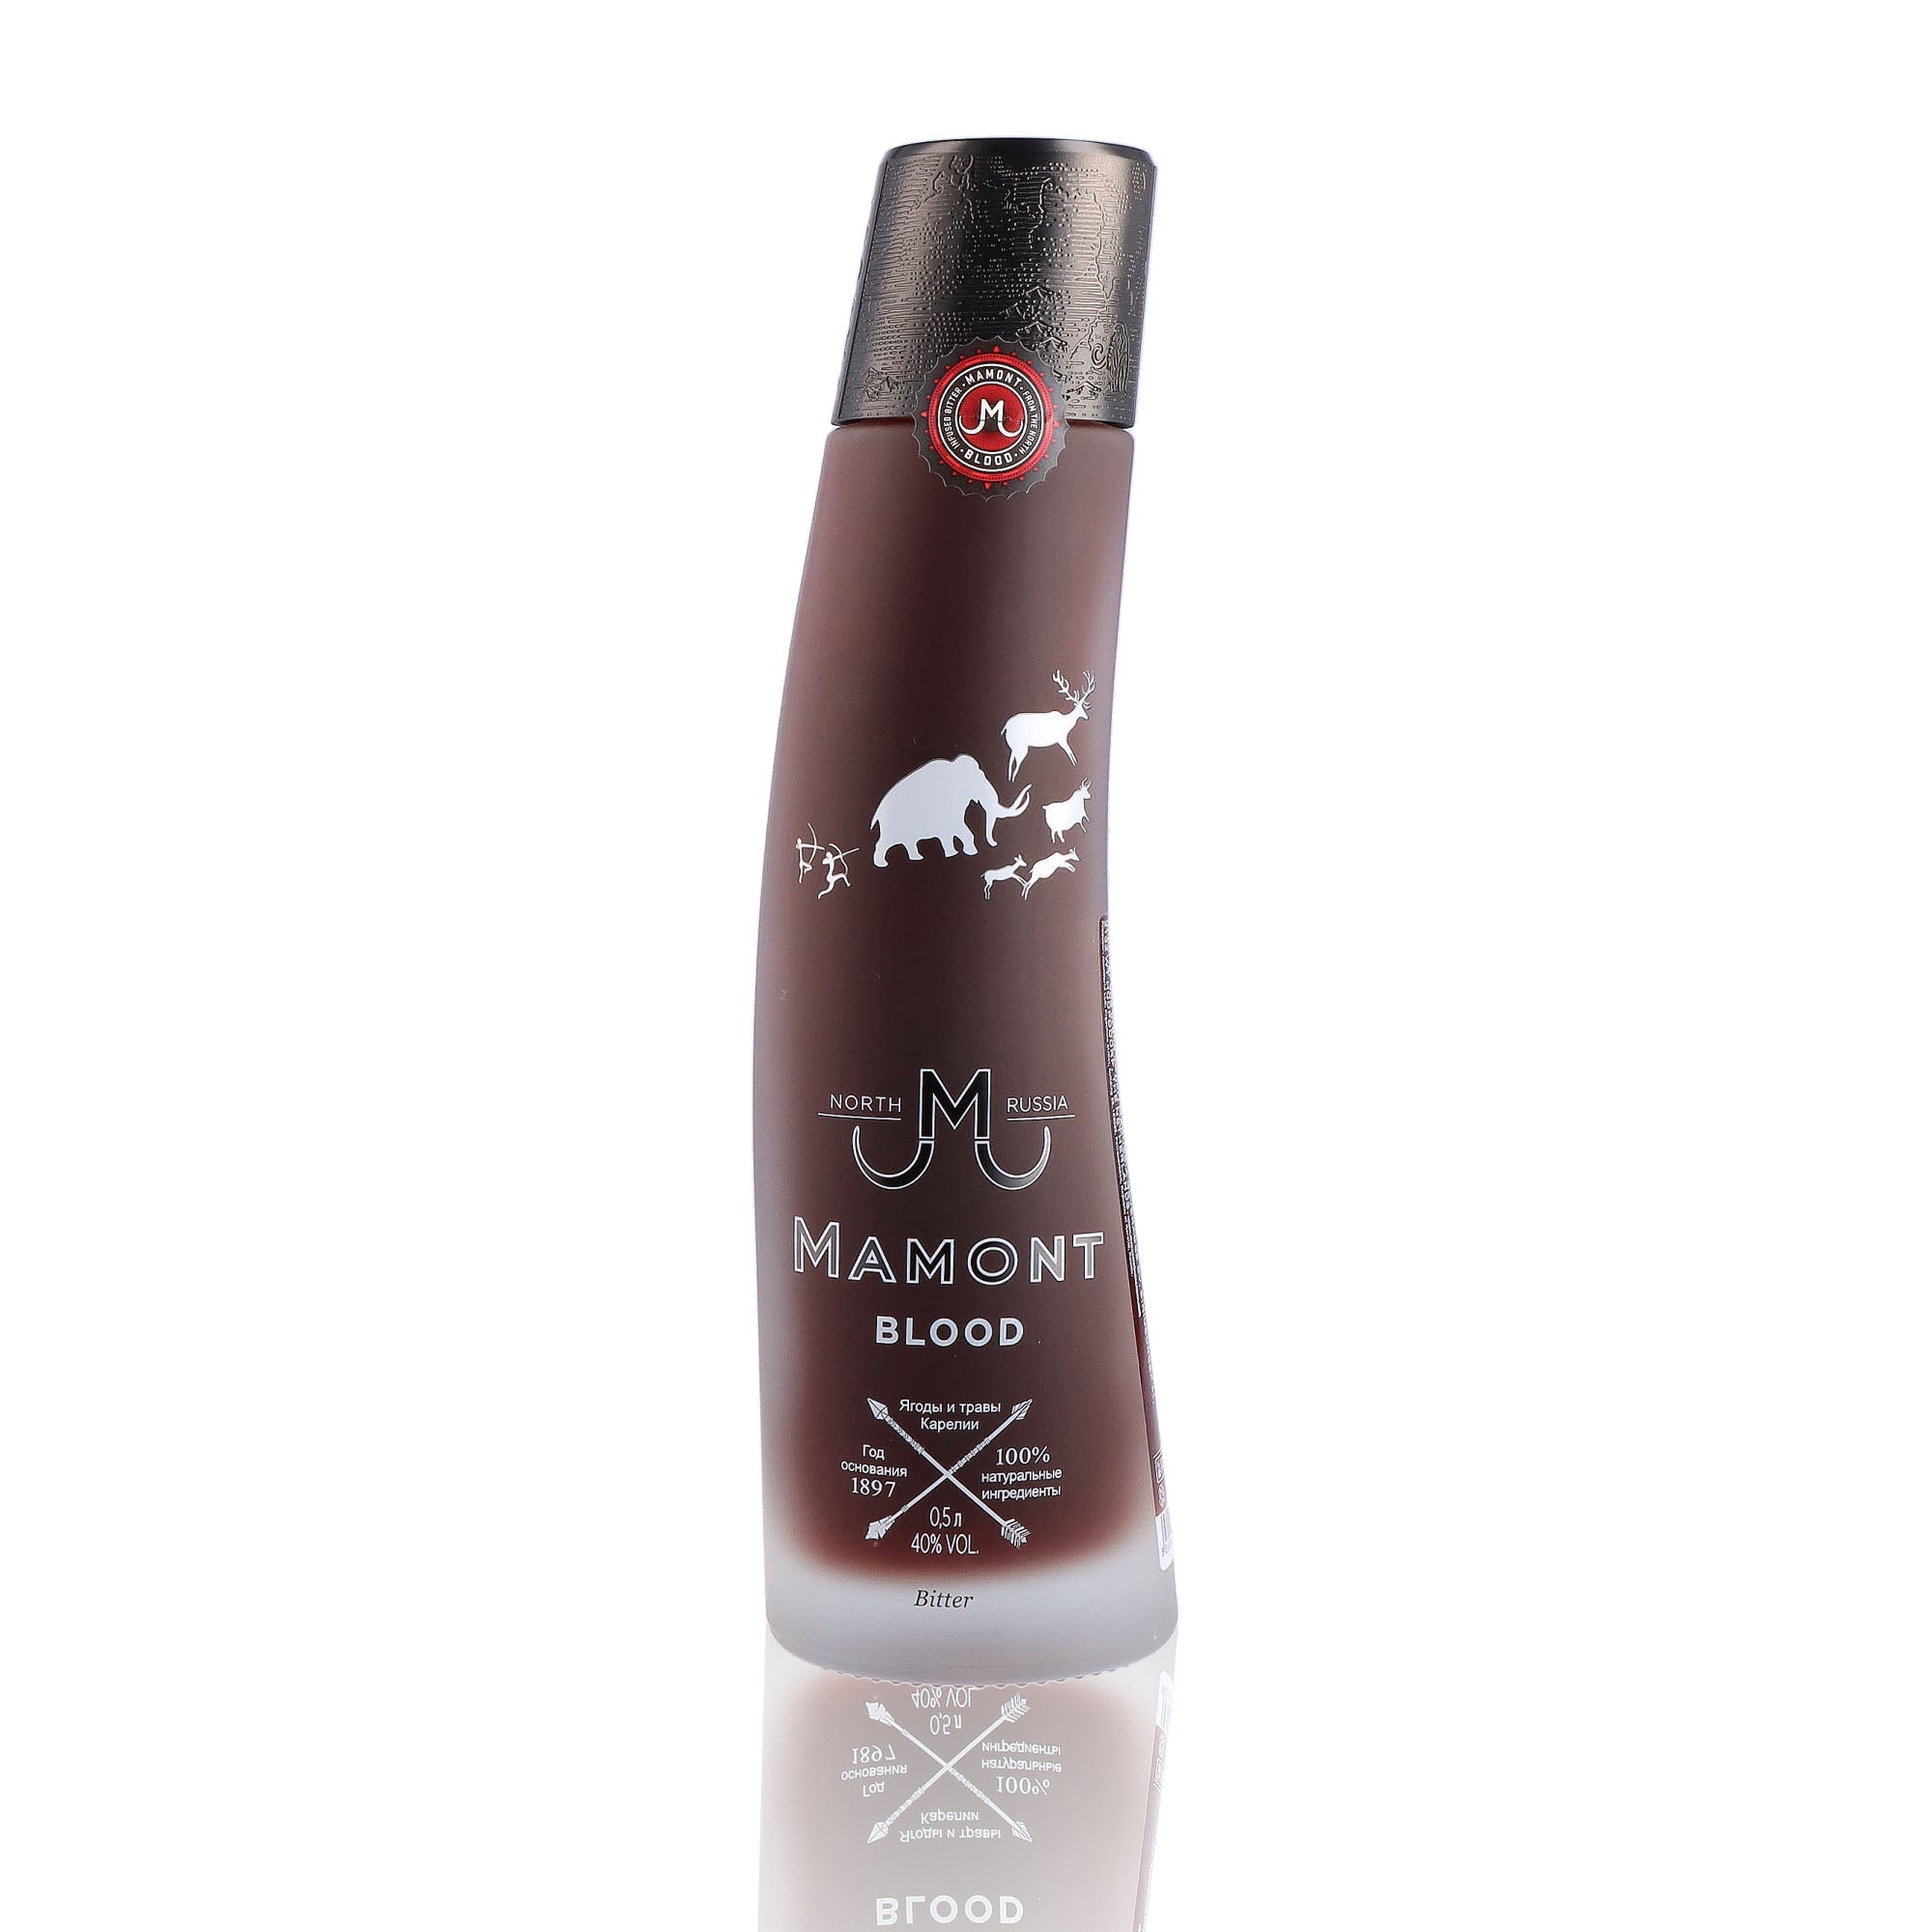 Une bouteille de Liqueur, de la marque Mamont, nommée Blood.